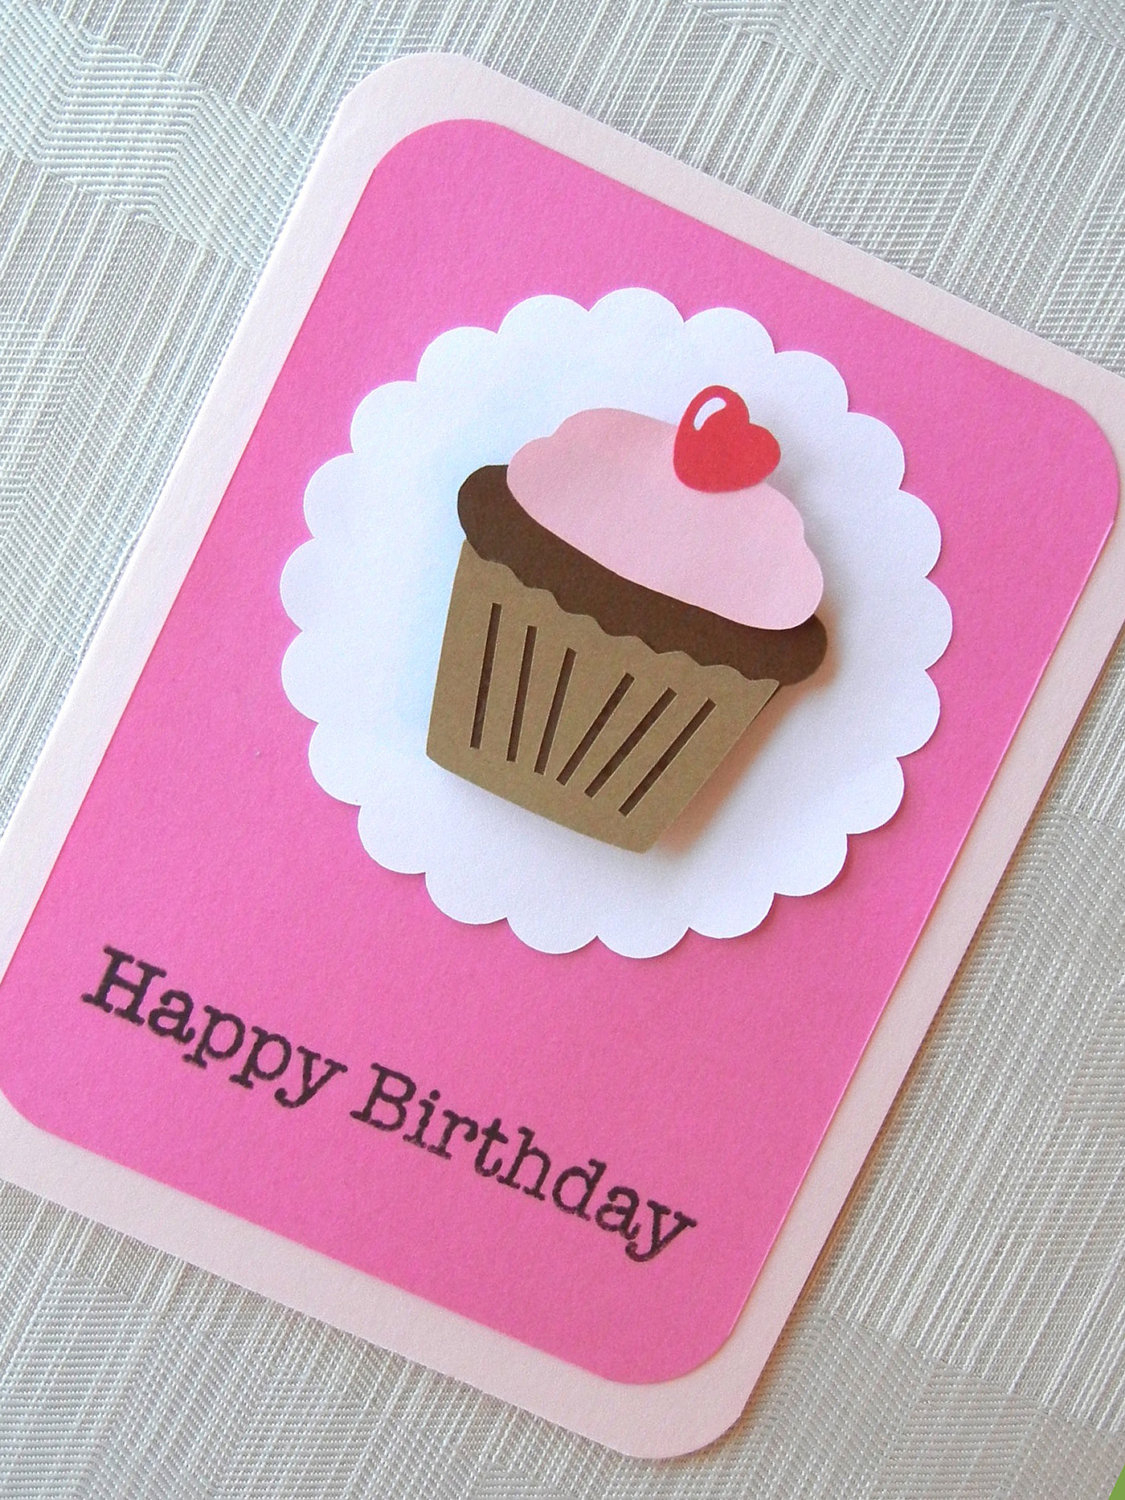 Craft Birthday Card Ideas Easy Diy Birthday Cards Ideas And Designs